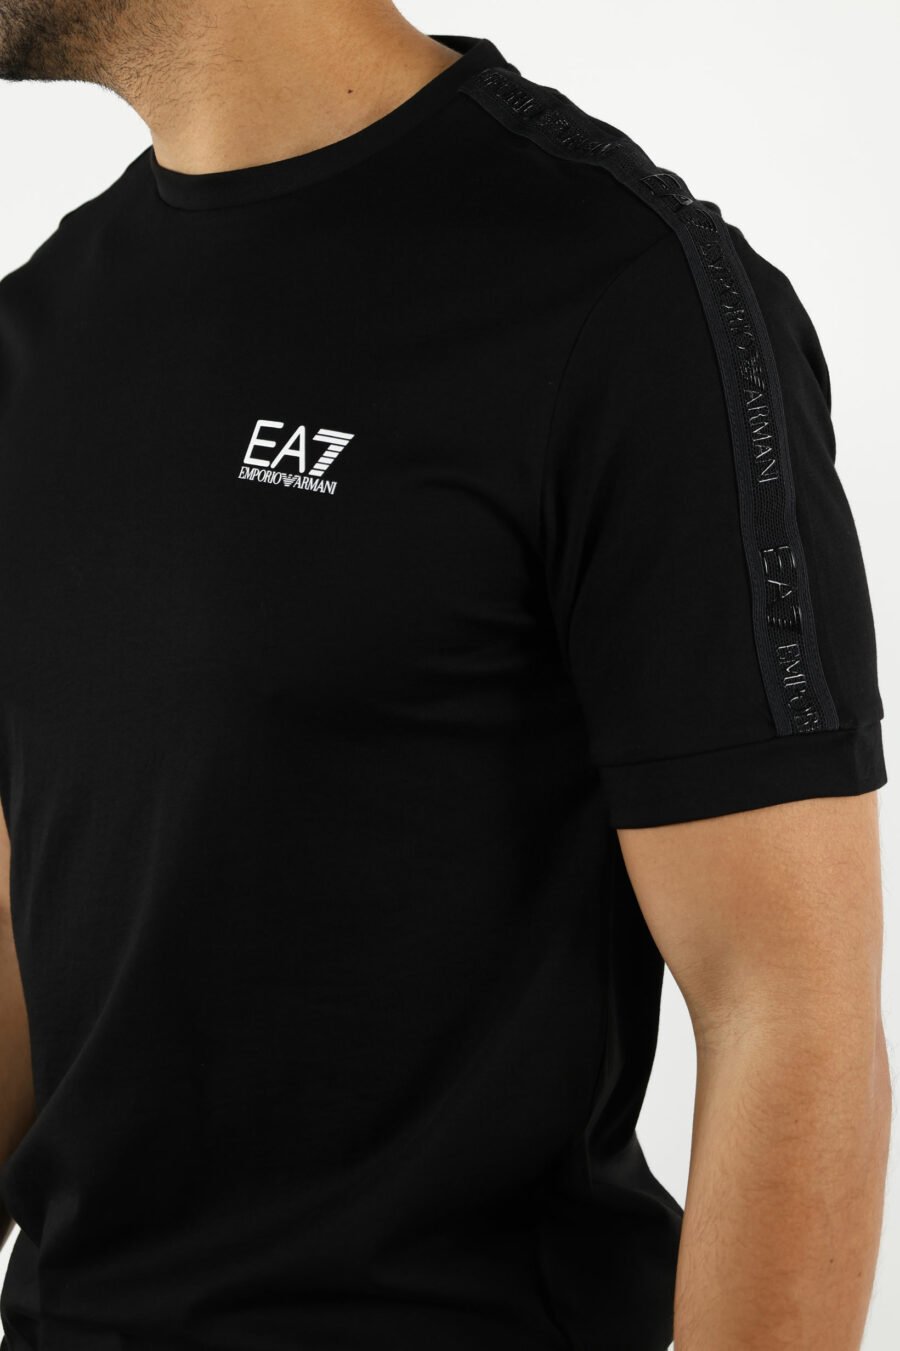 T-shirt noir avec bande mini-logo "lux identity" noire - 110960